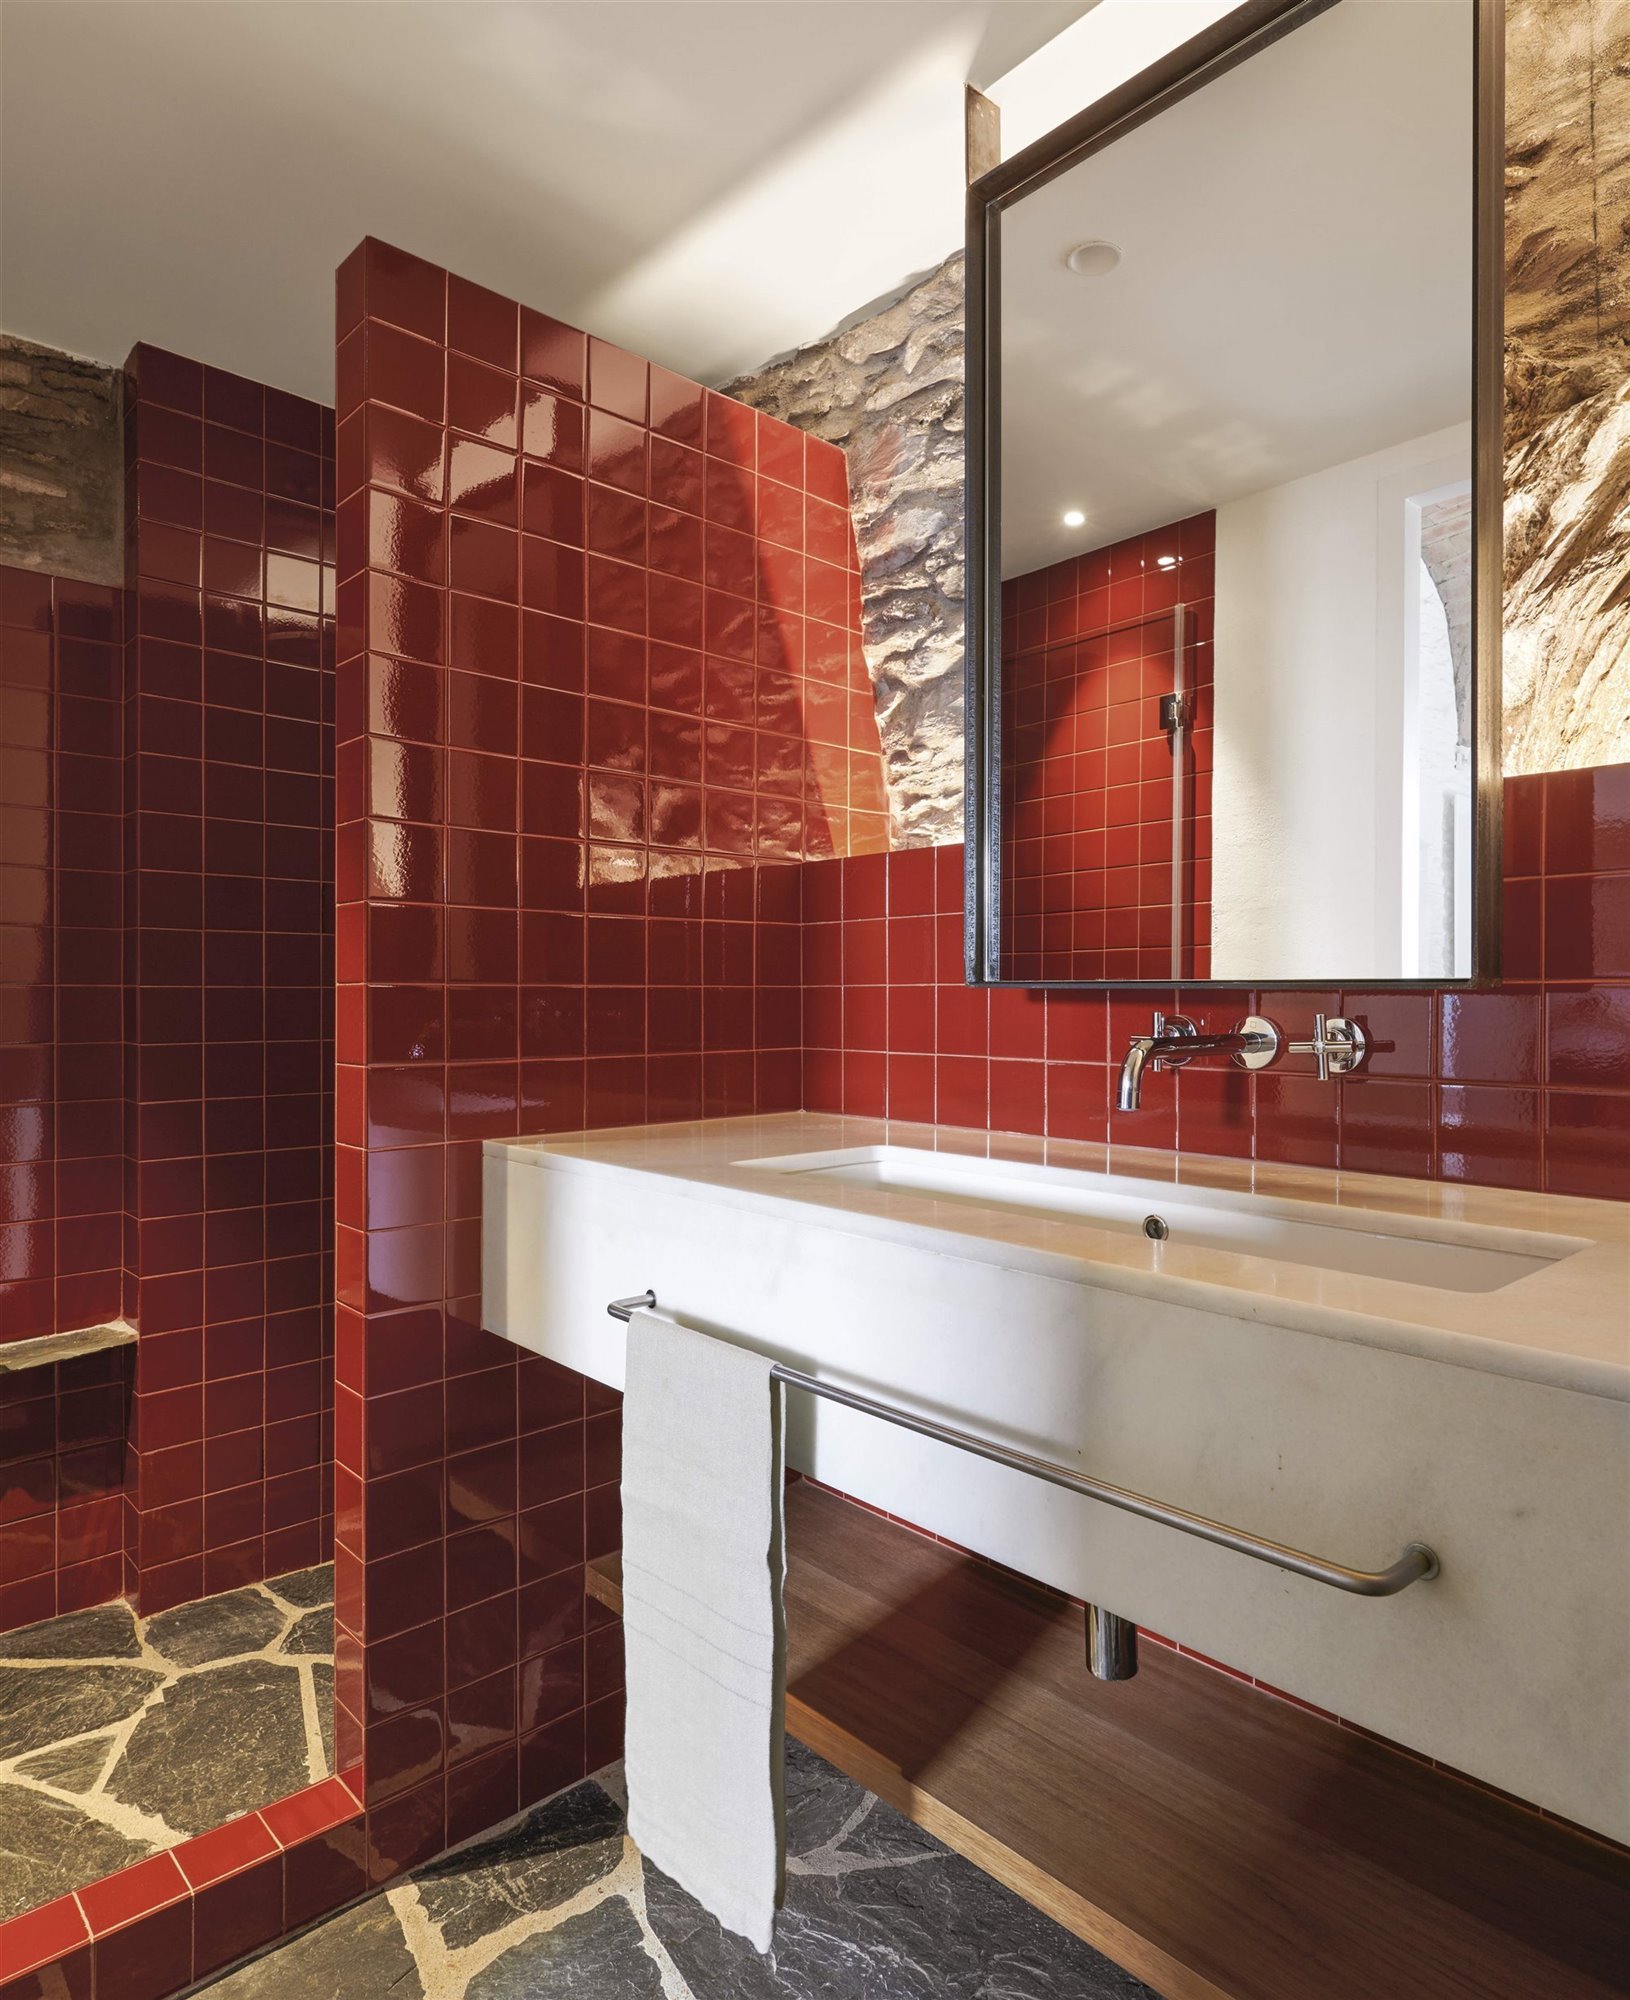 Baño con azulejos rojos en acabado brillo.